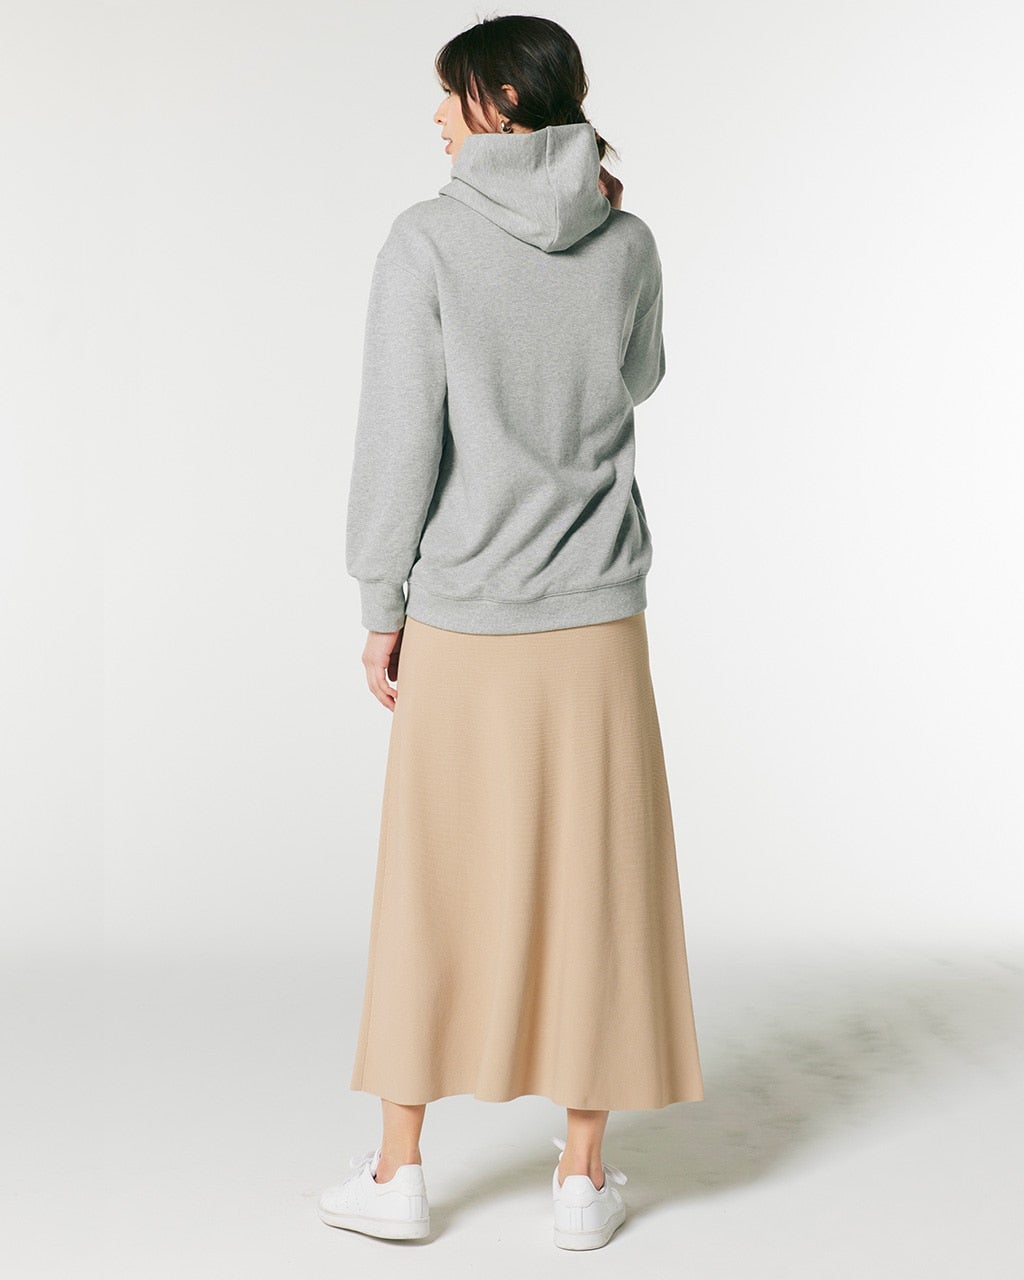 総針編み・Aラインニットスカート/40代50代からのレディース・メンズ